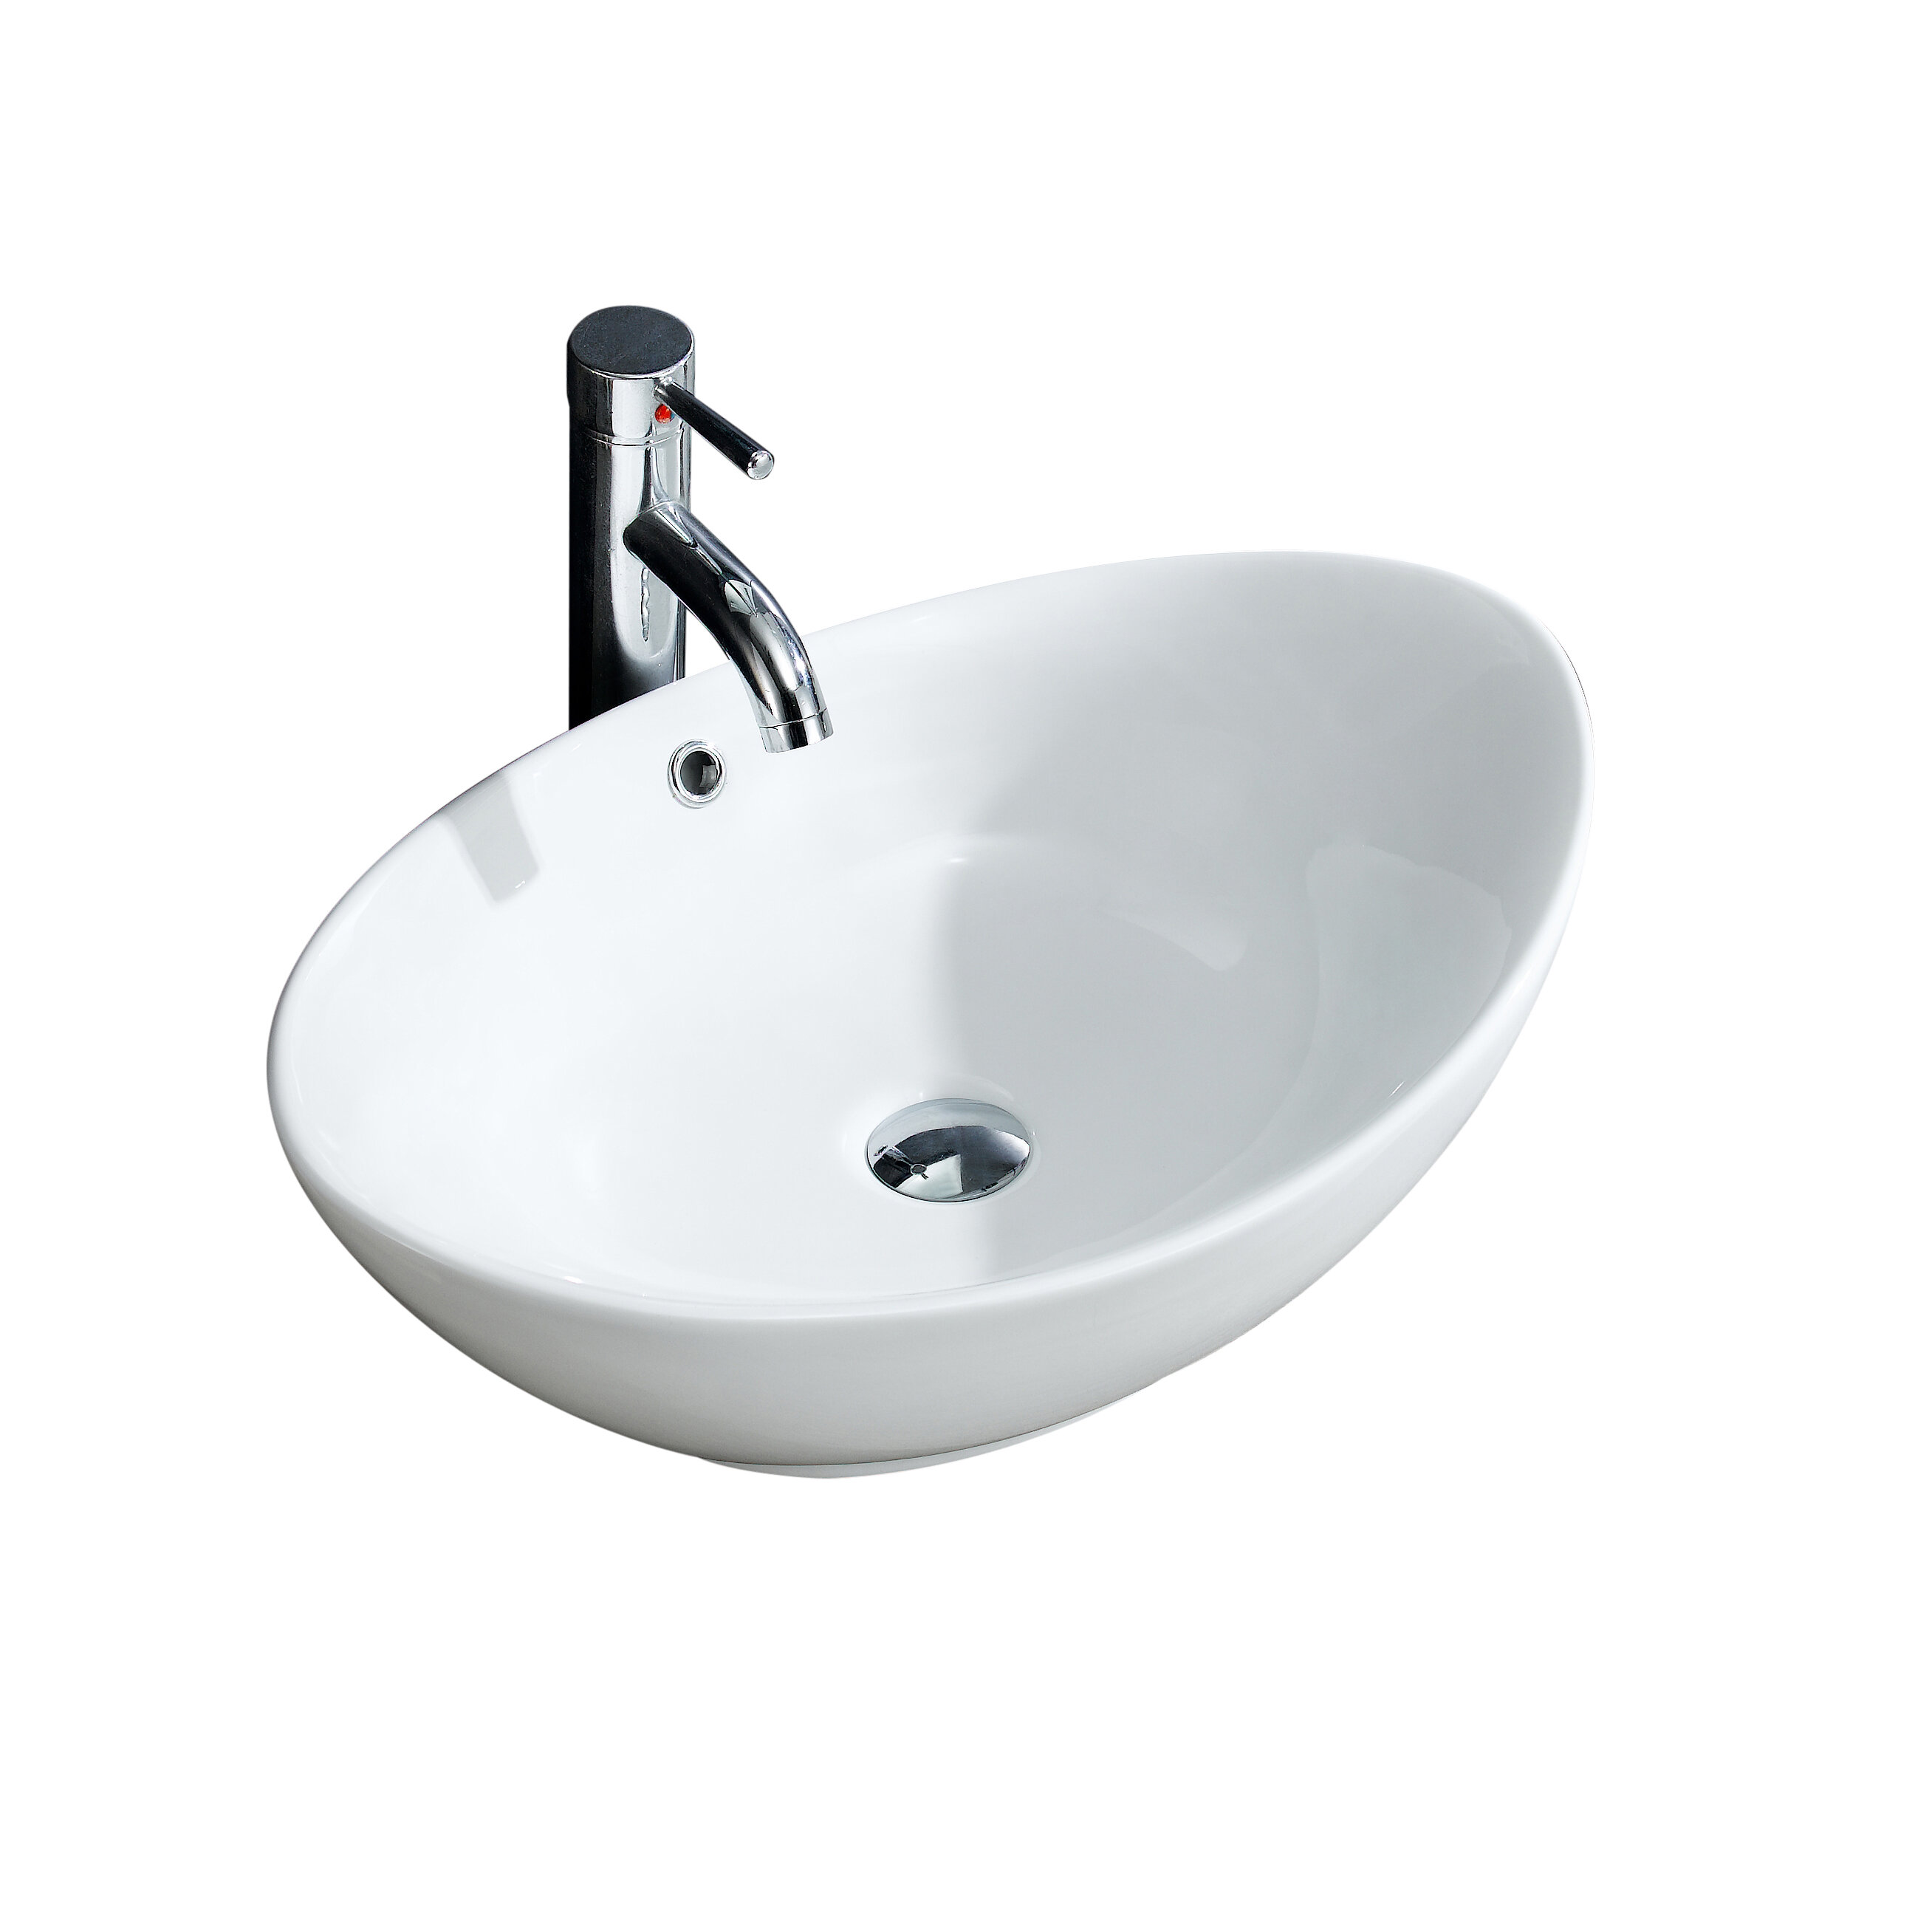 https://assets.wfcdn.com/im/93137263/compr-r85/9024/90243809/modern-ceramic-oval-vessel-bathroom-sink-with-overflow.jpg